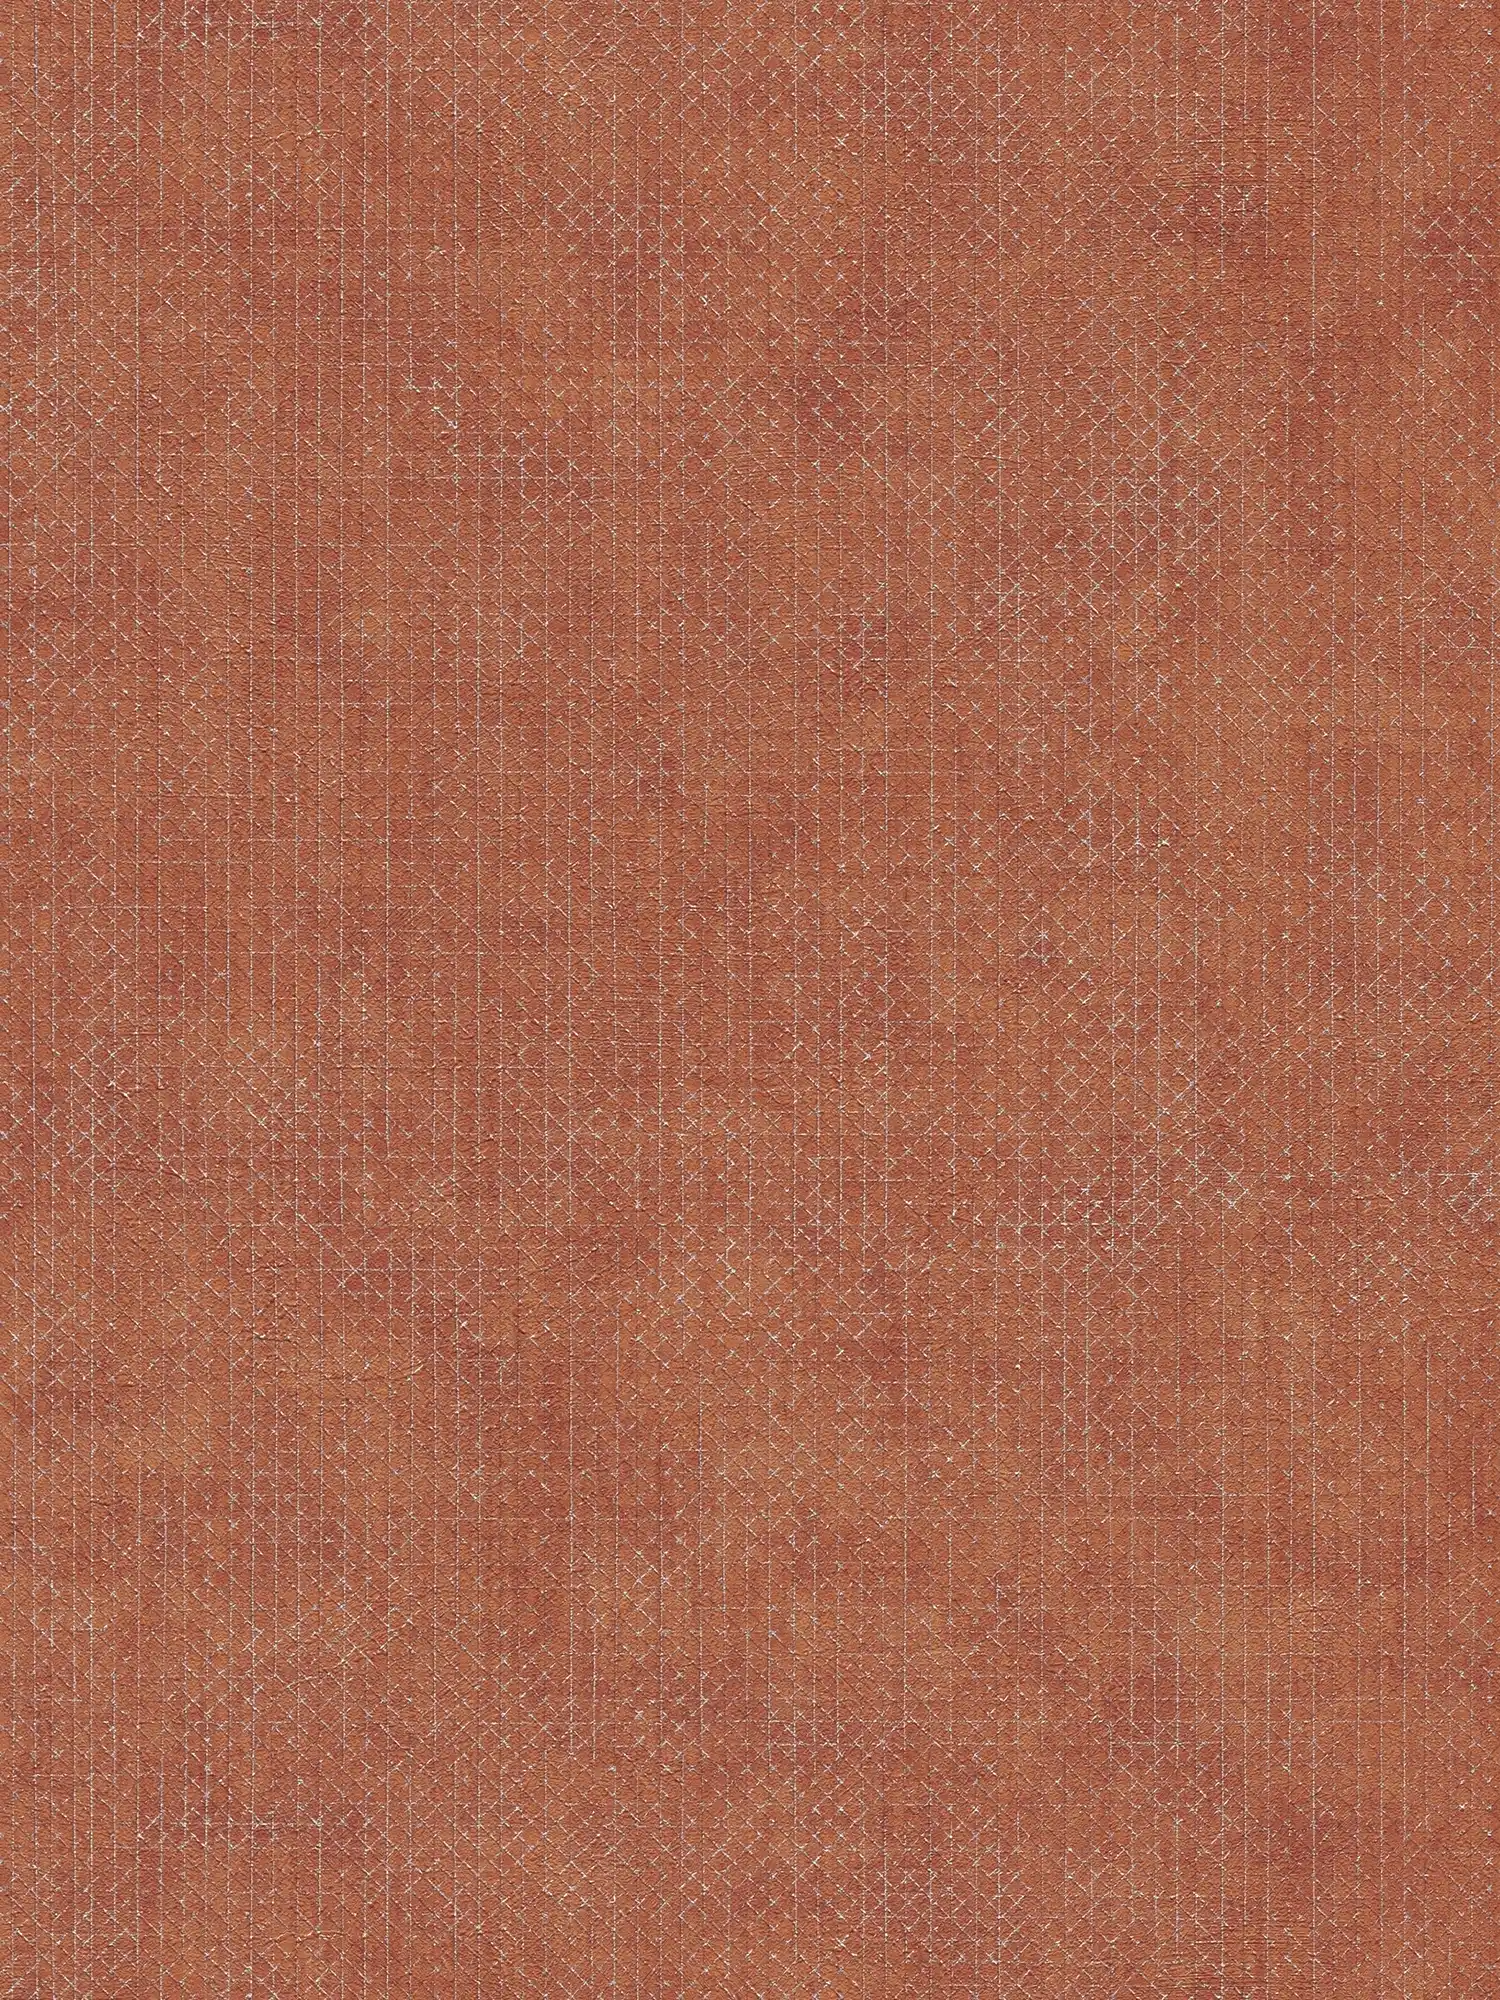 Papier peint rouge brique avec motif texturé argenté - orange, rouge
